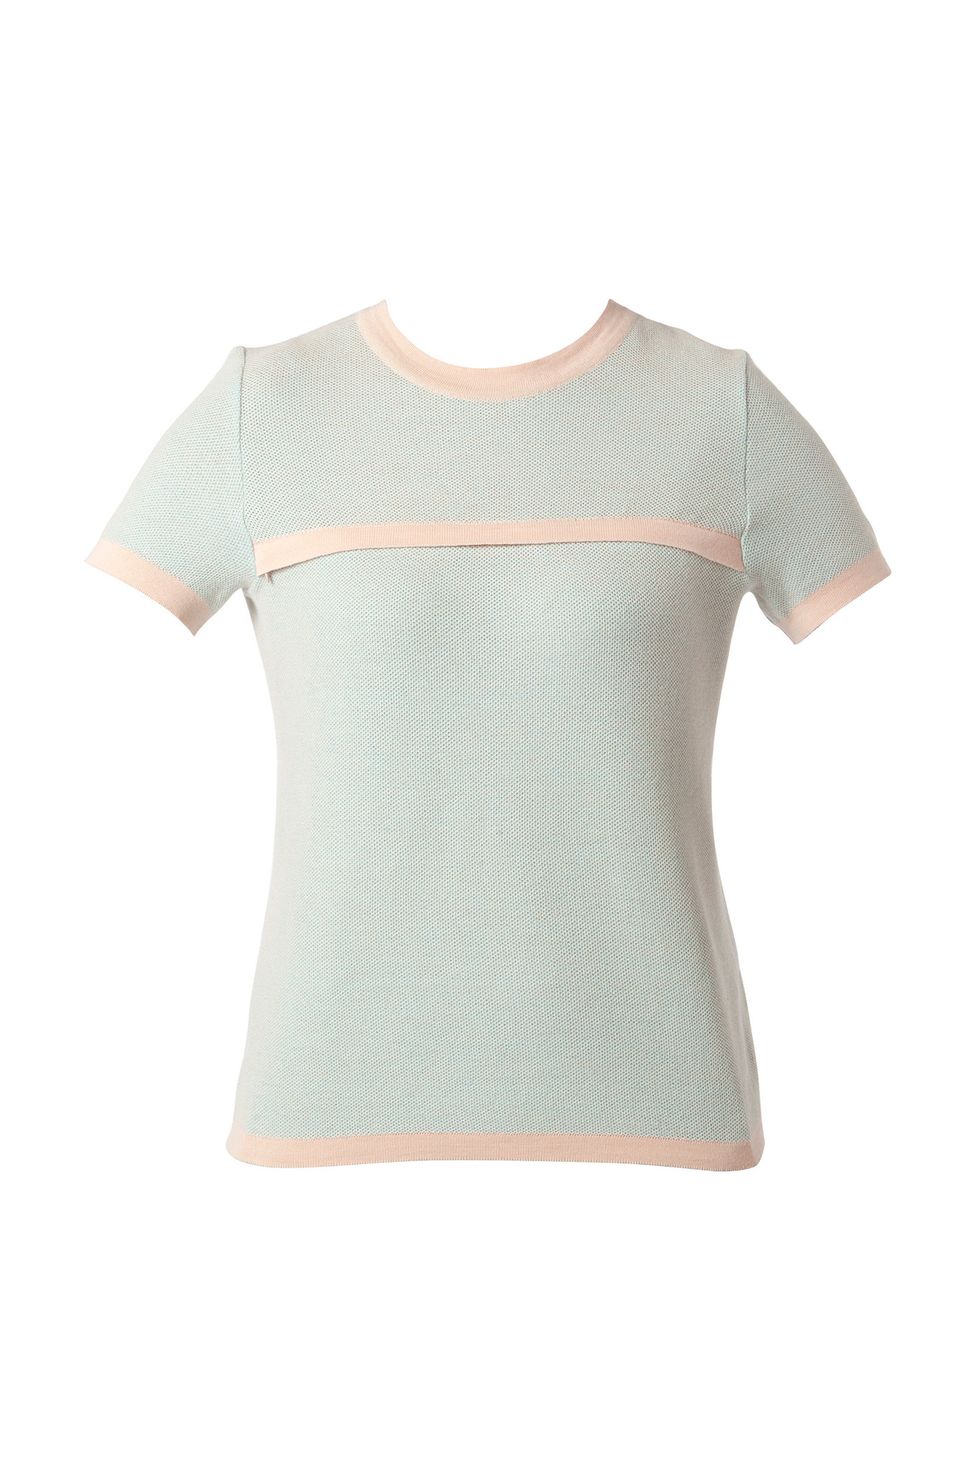 Idee regalo moda 2017 per la festa della mamma come la t-shirt menta di Teat&Cosset